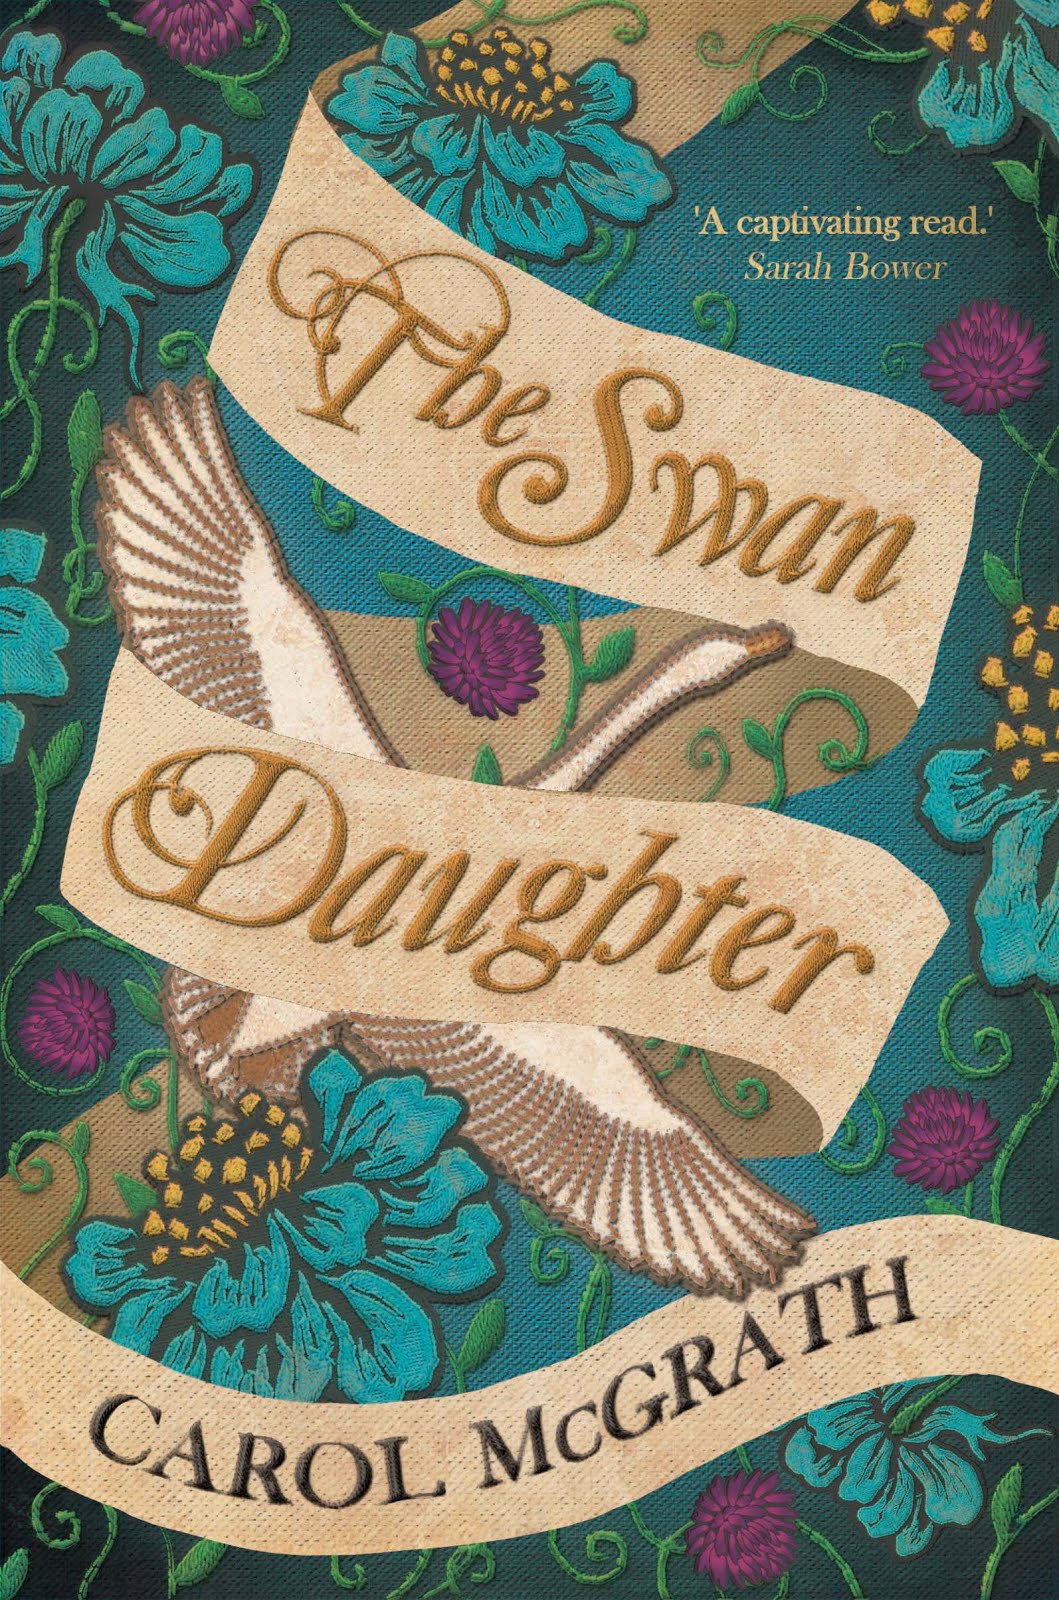 The Swan Daughter